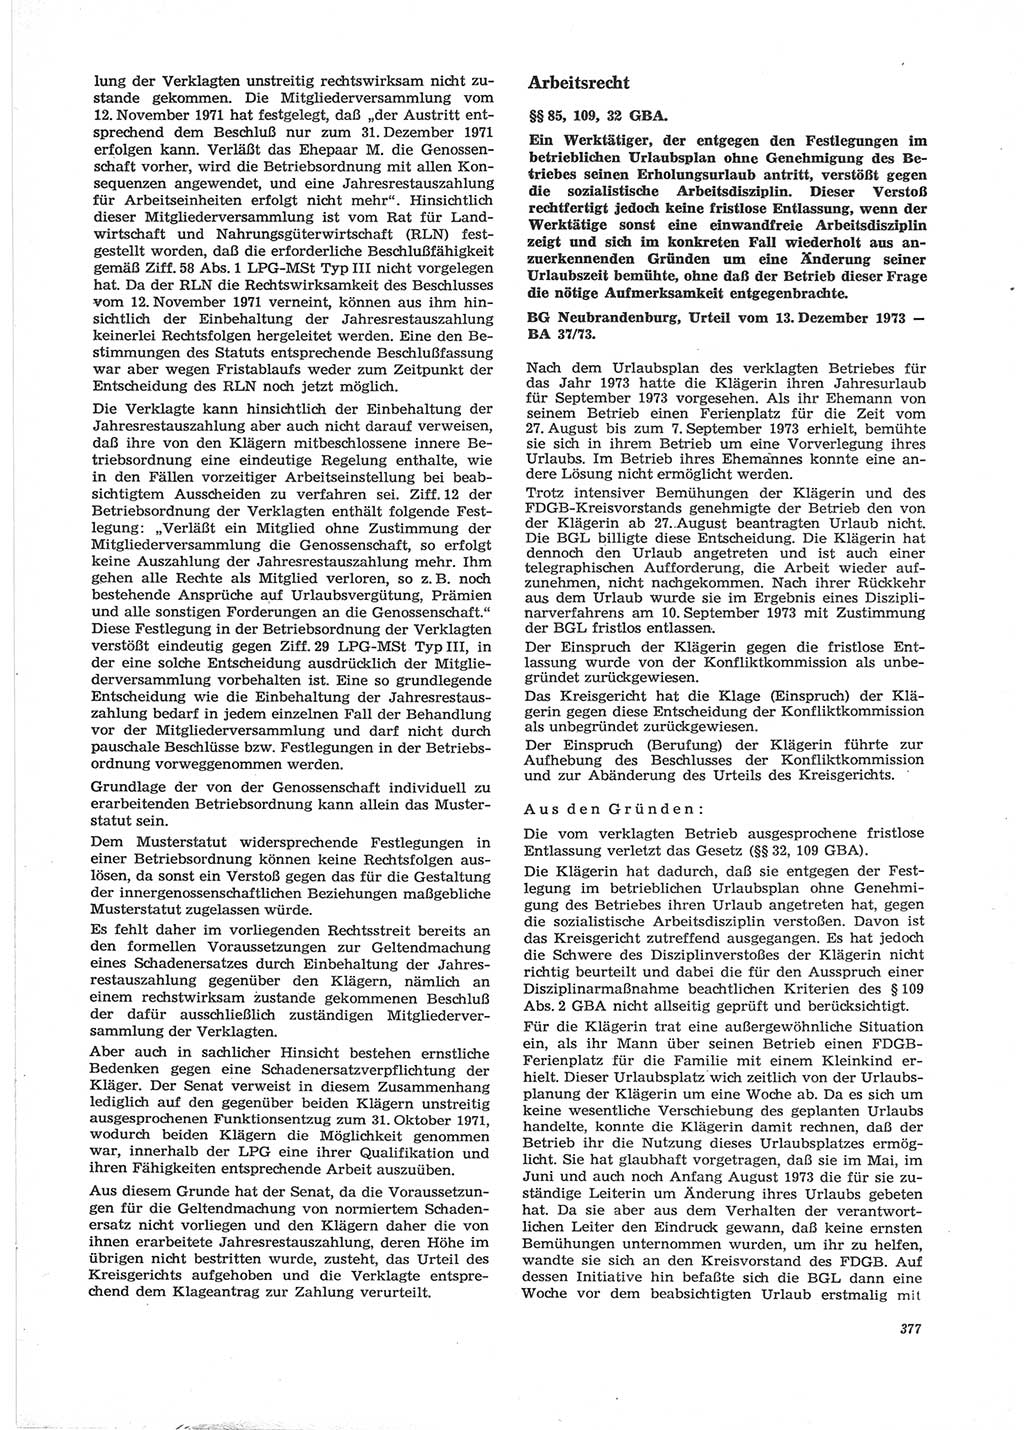 Neue Justiz (NJ), Zeitschrift für Recht und Rechtswissenschaft [Deutsche Demokratische Republik (DDR)], 28. Jahrgang 1974, Seite 377 (NJ DDR 1974, S. 377)